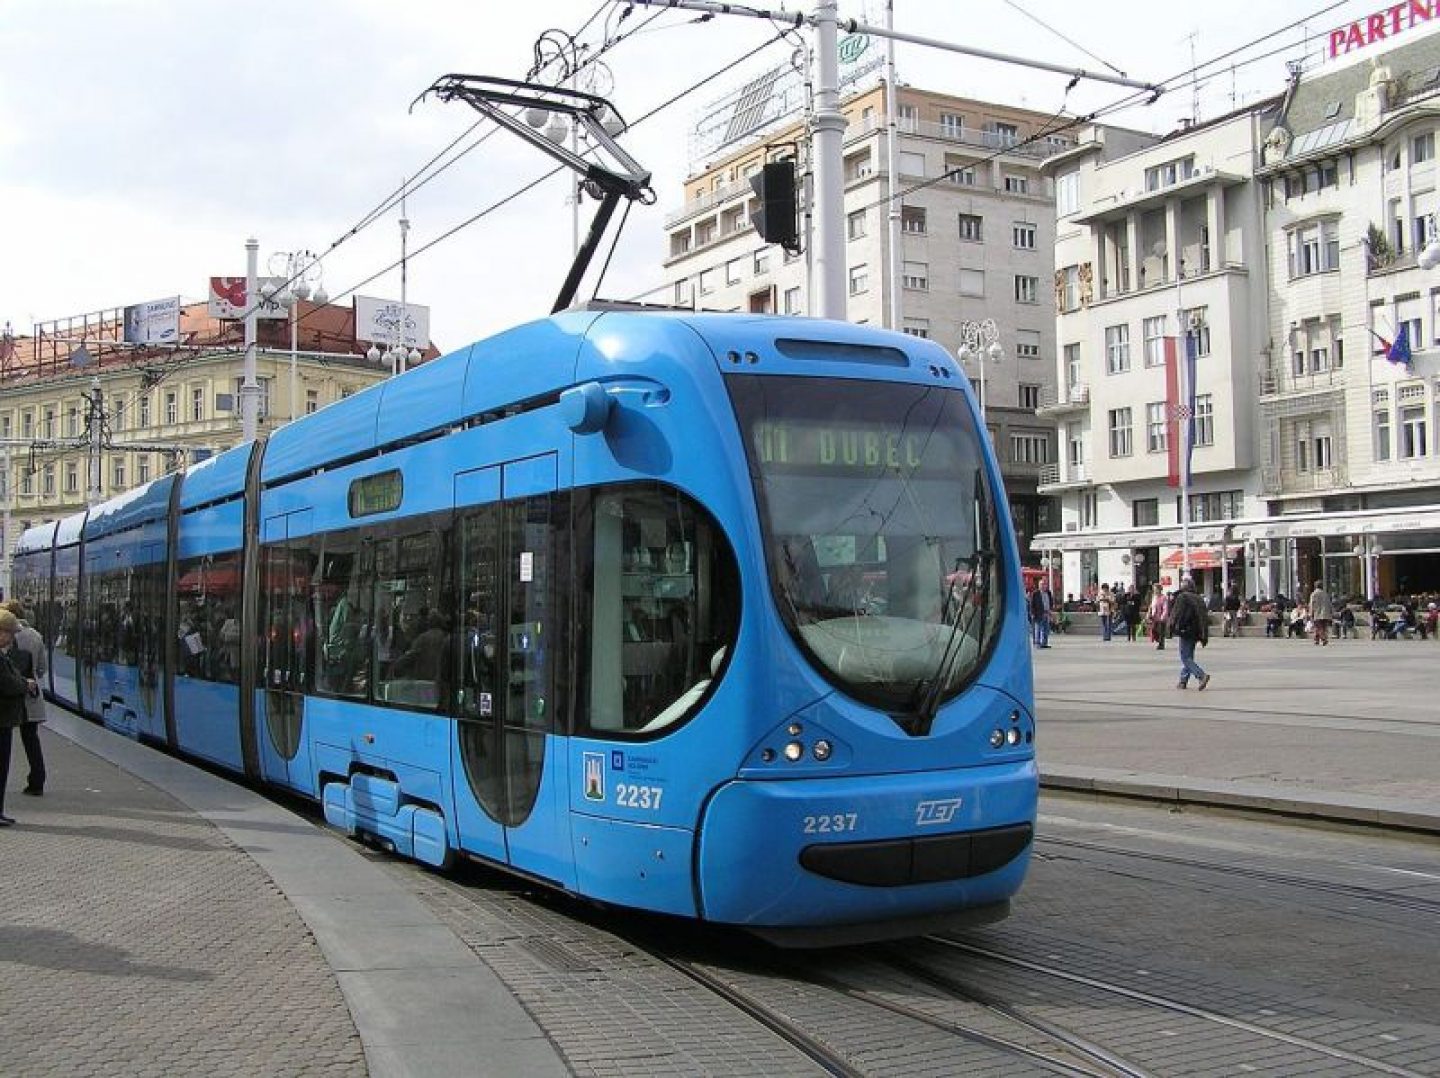 Ljetni vozni red ZET-a: Ukida se jedna tramvajska i dvije autobusne linije